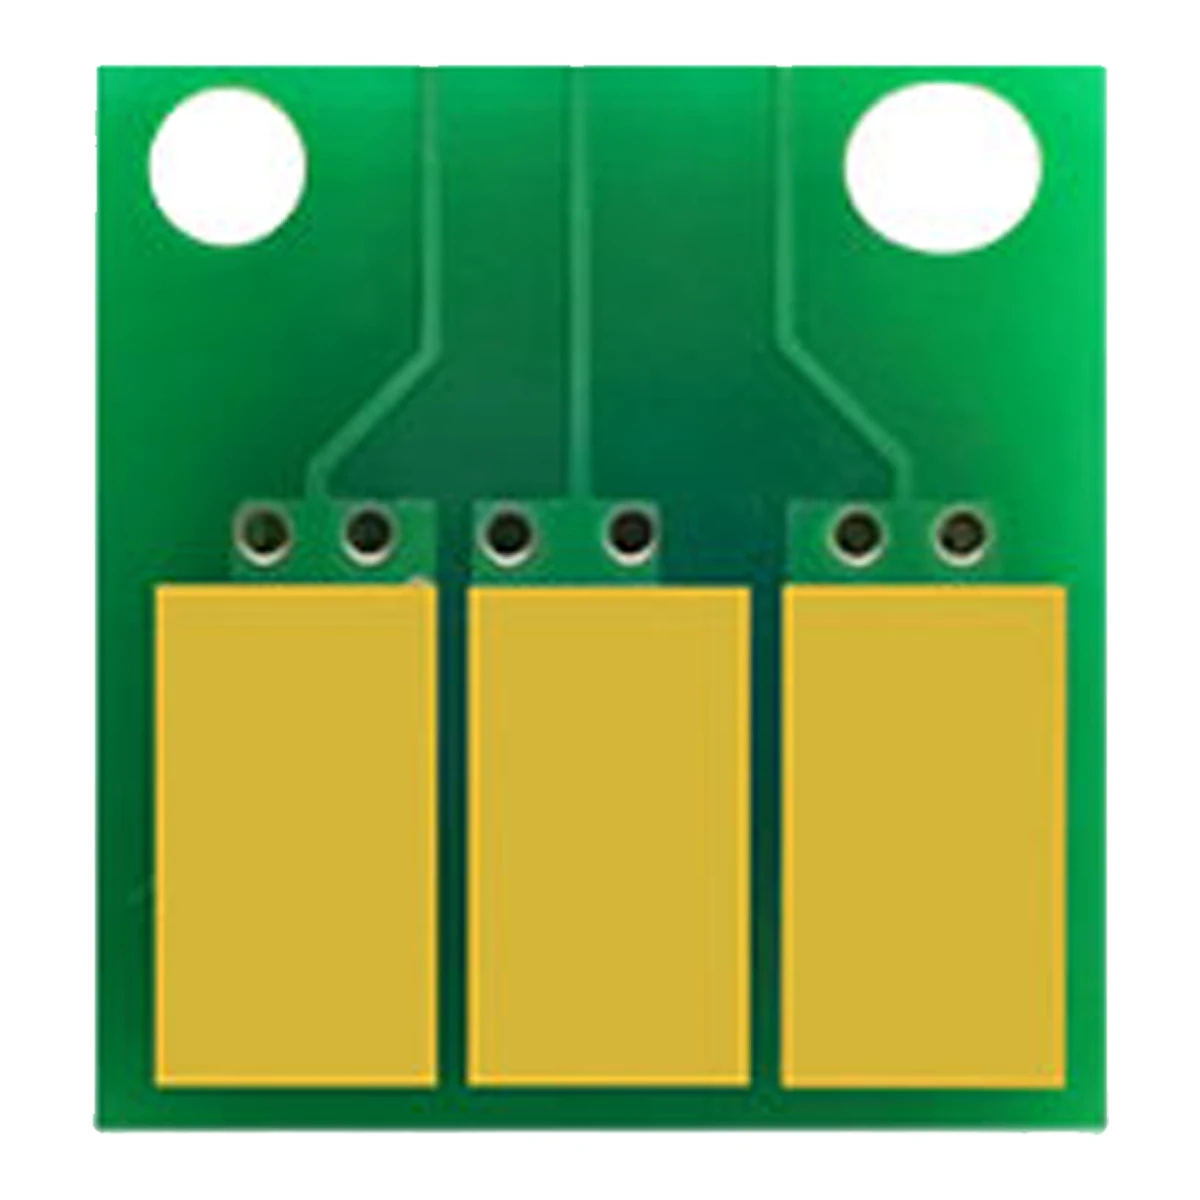 4PCS x DR311 Drum Cartridge Chip for Konica Minolta bizhub C220 C280 C360 C7722 C7728 C7822 DR-311 Drum Unit Imaging Reset IU